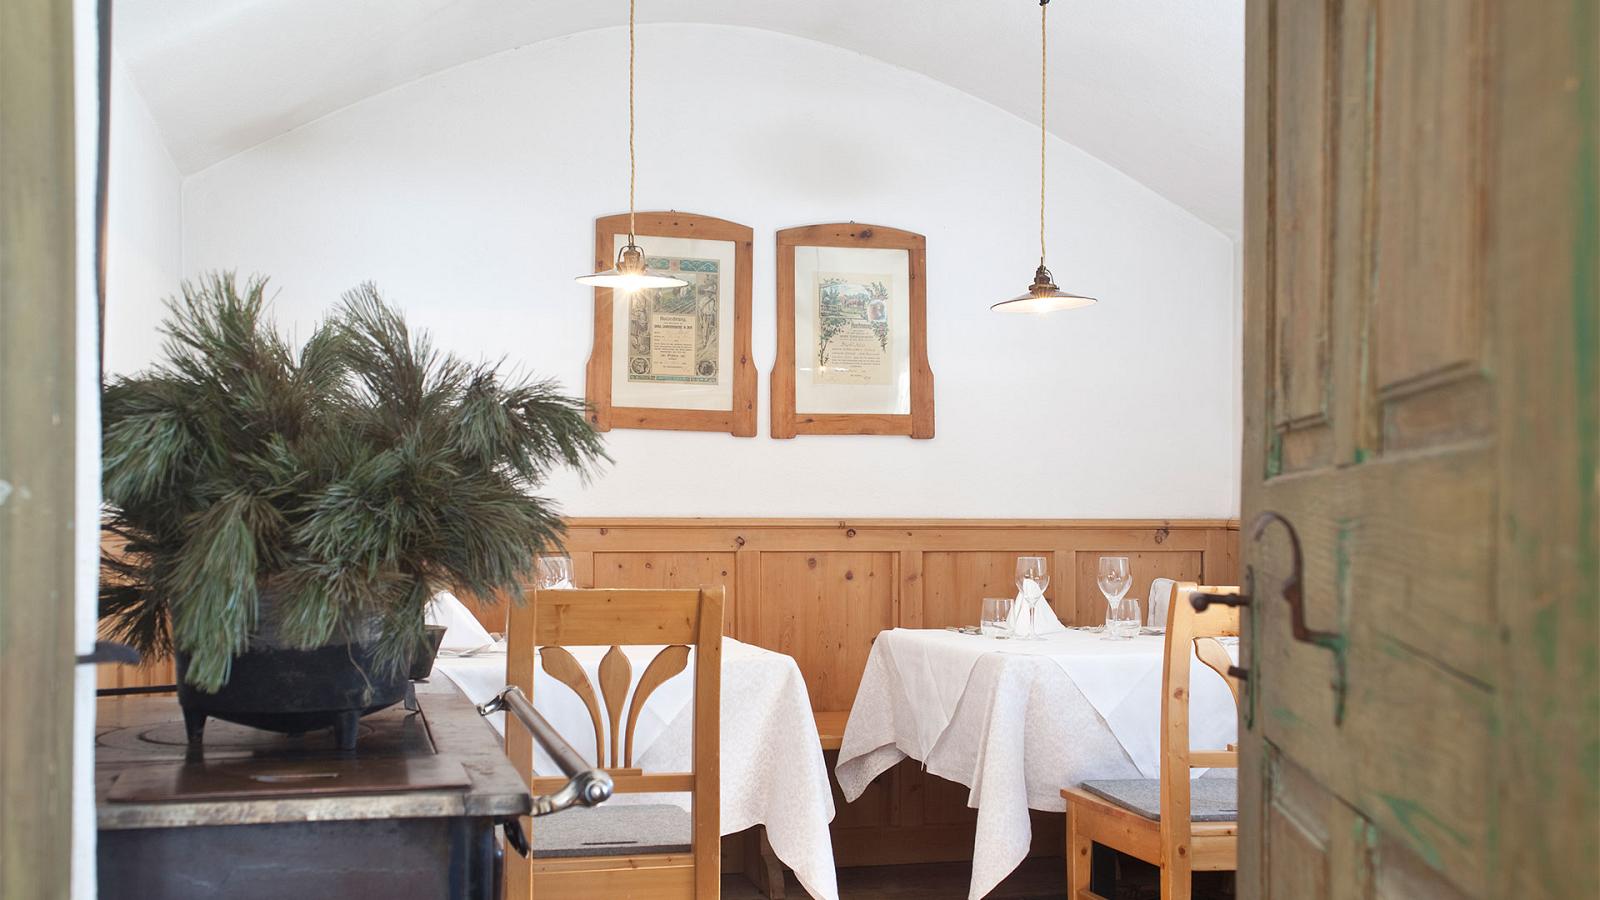 Un angolo della sala da pranzo dell'Hotel Strobl a Sesto con arredamento in legno, quadri antichi, rami di pino mugo sopra ad una stufa a legna e due tavoli elegantemente apparecchiati